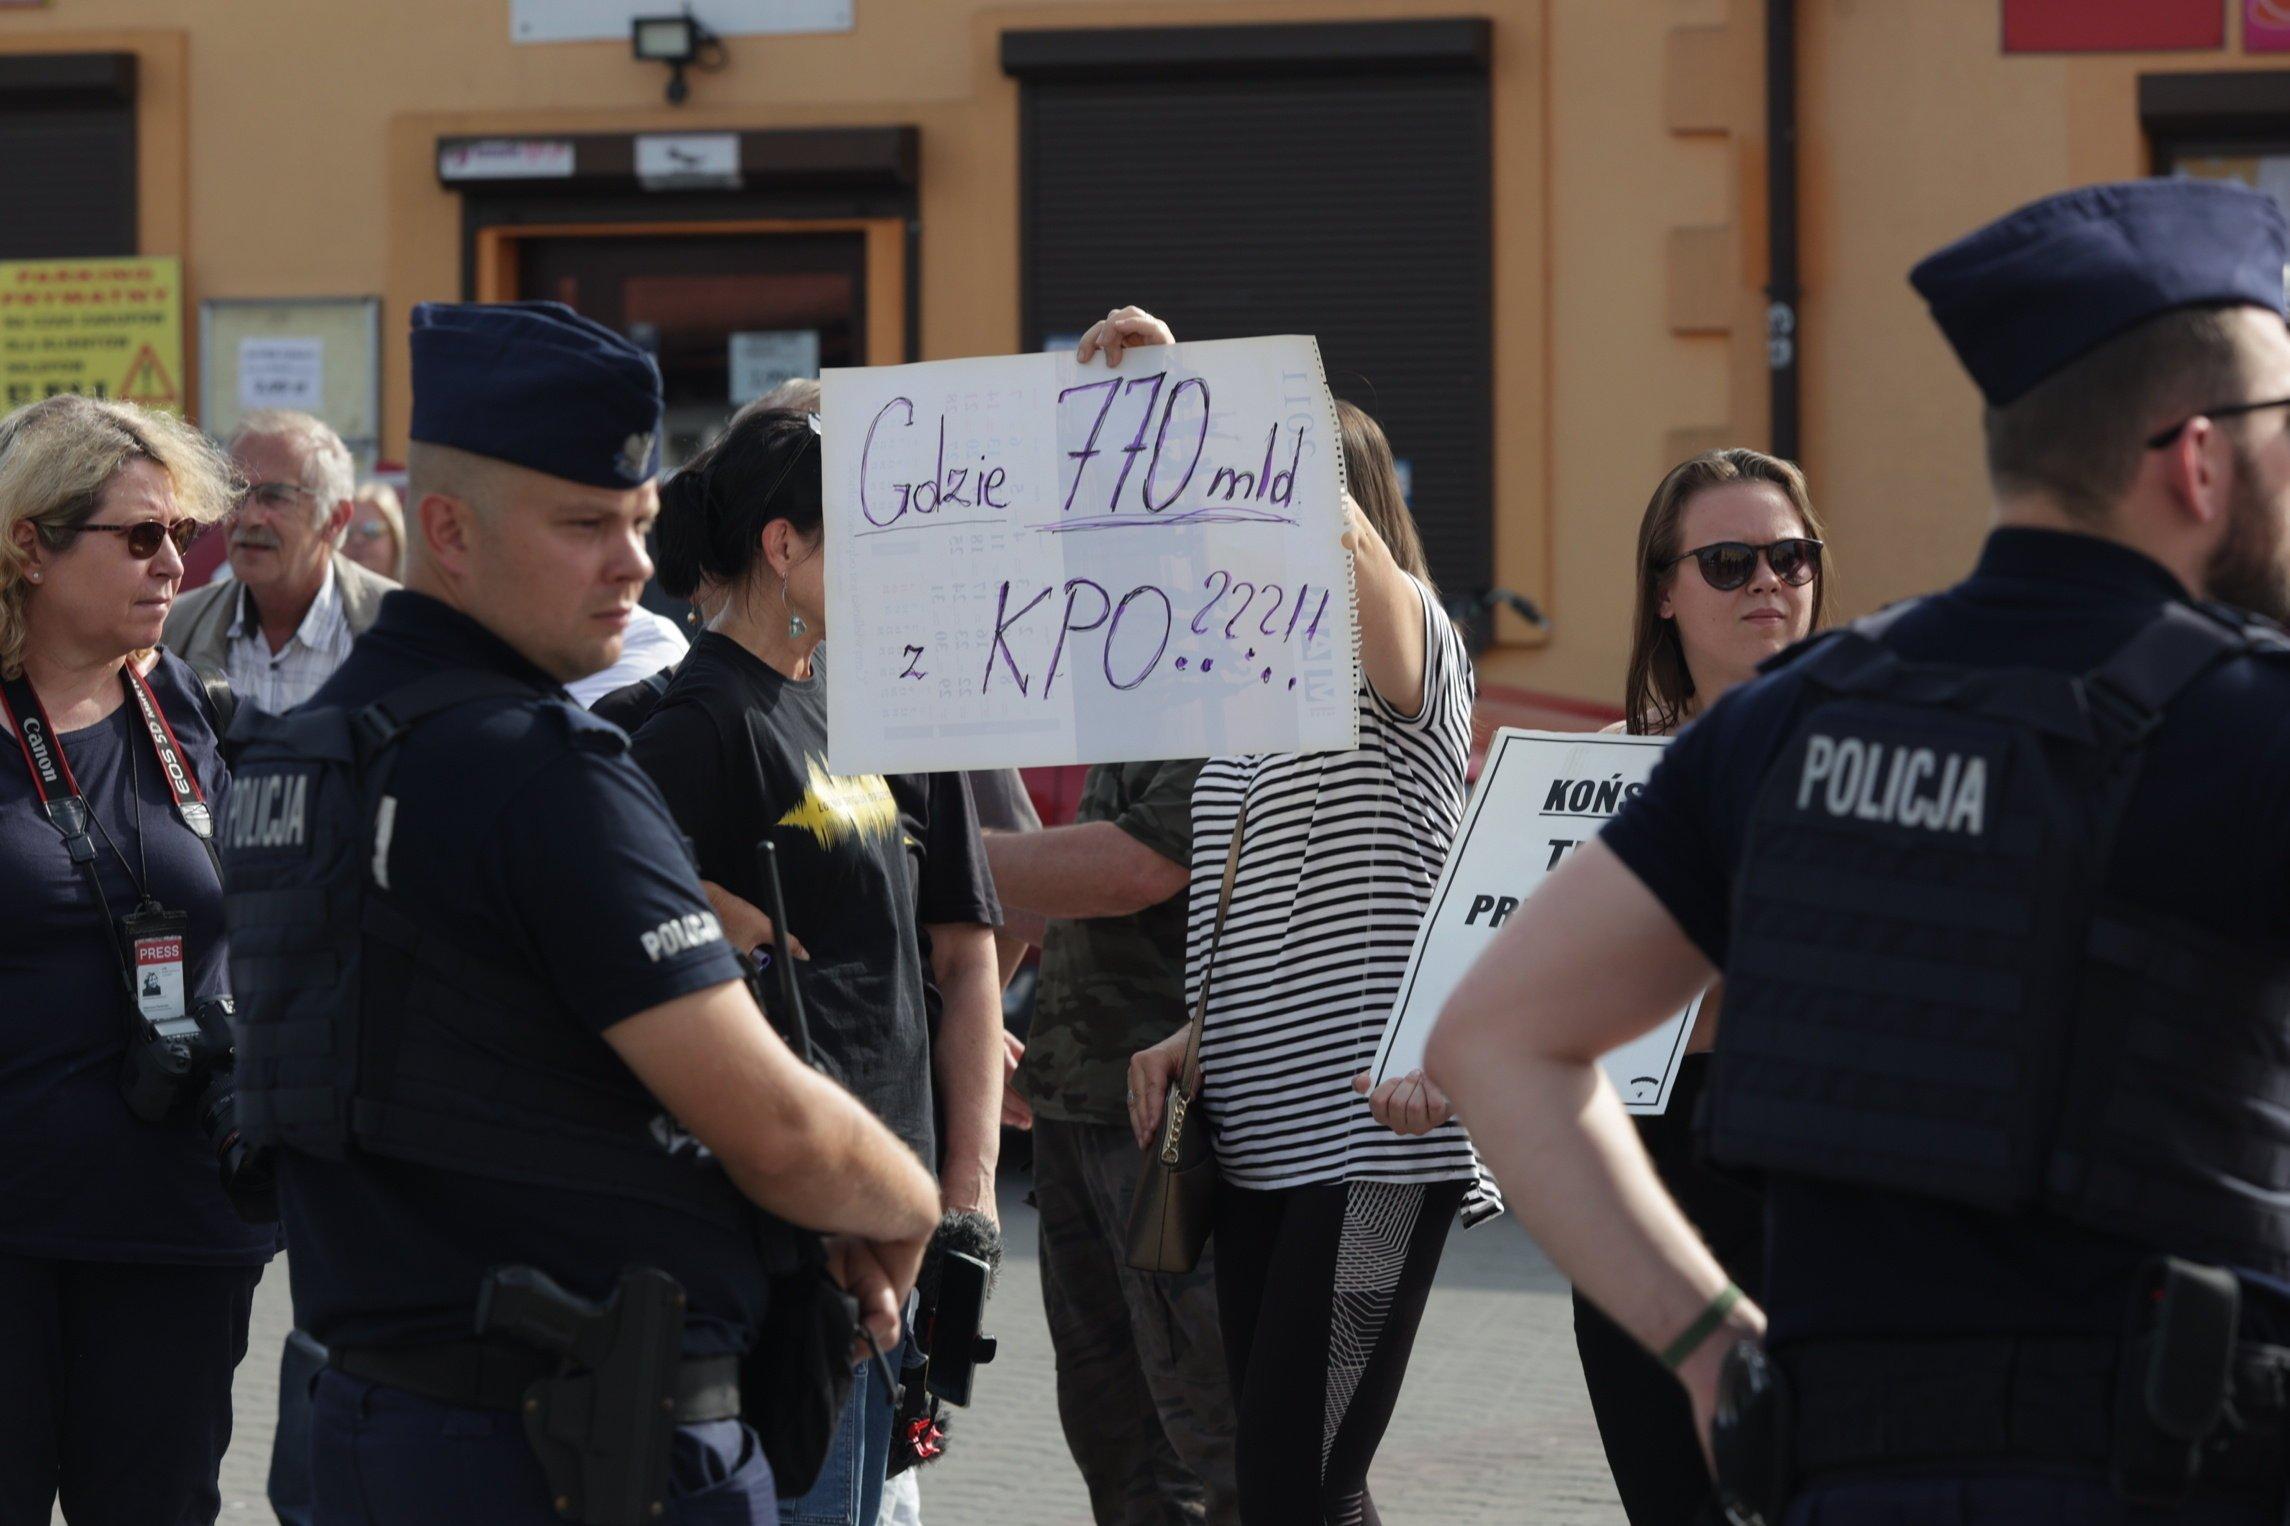 Kobieta z plakatem "Gdzie 770 mld z KPO" i policjanci